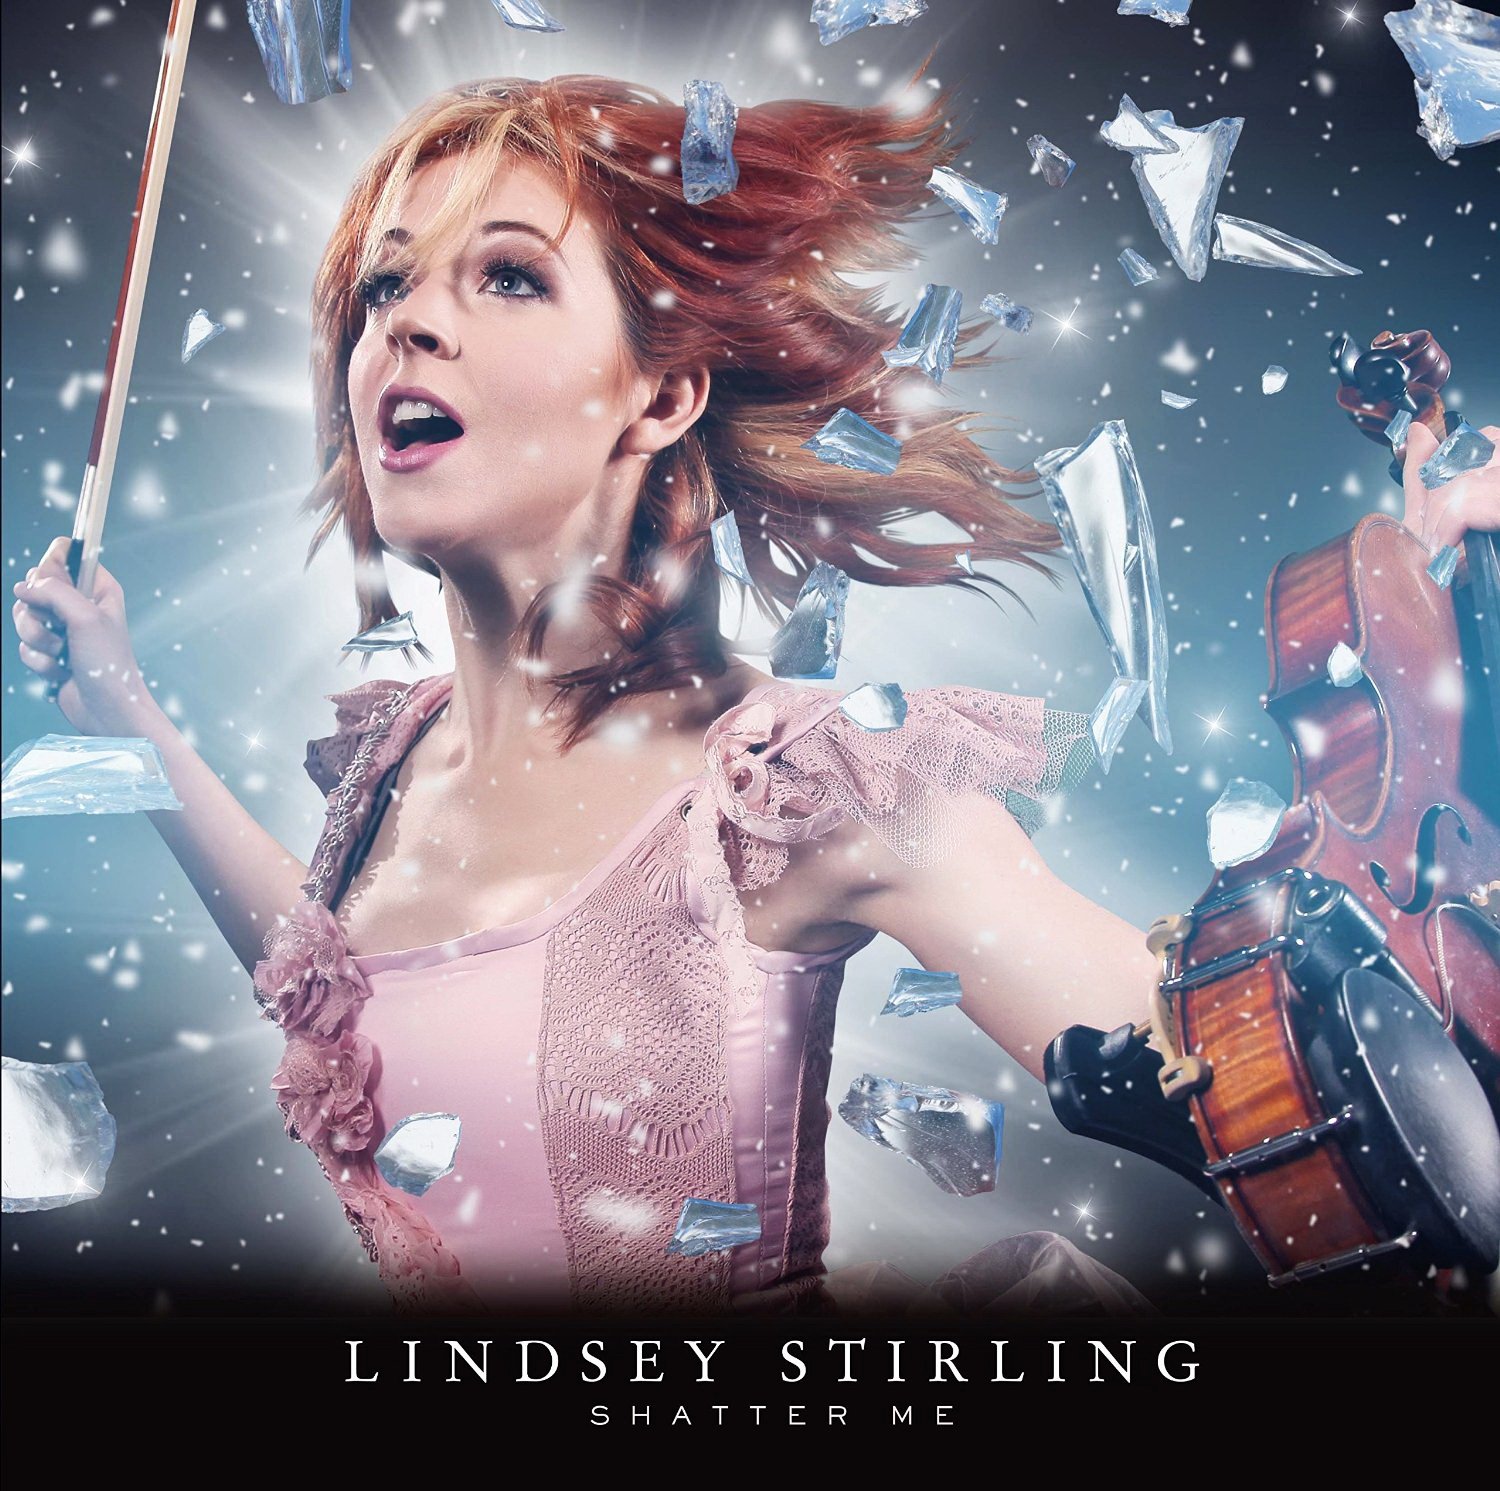 Lindsey Stirling - Shatter Me (Japanese Limited Edition) Artwork (1 of 1) |  Last.fm